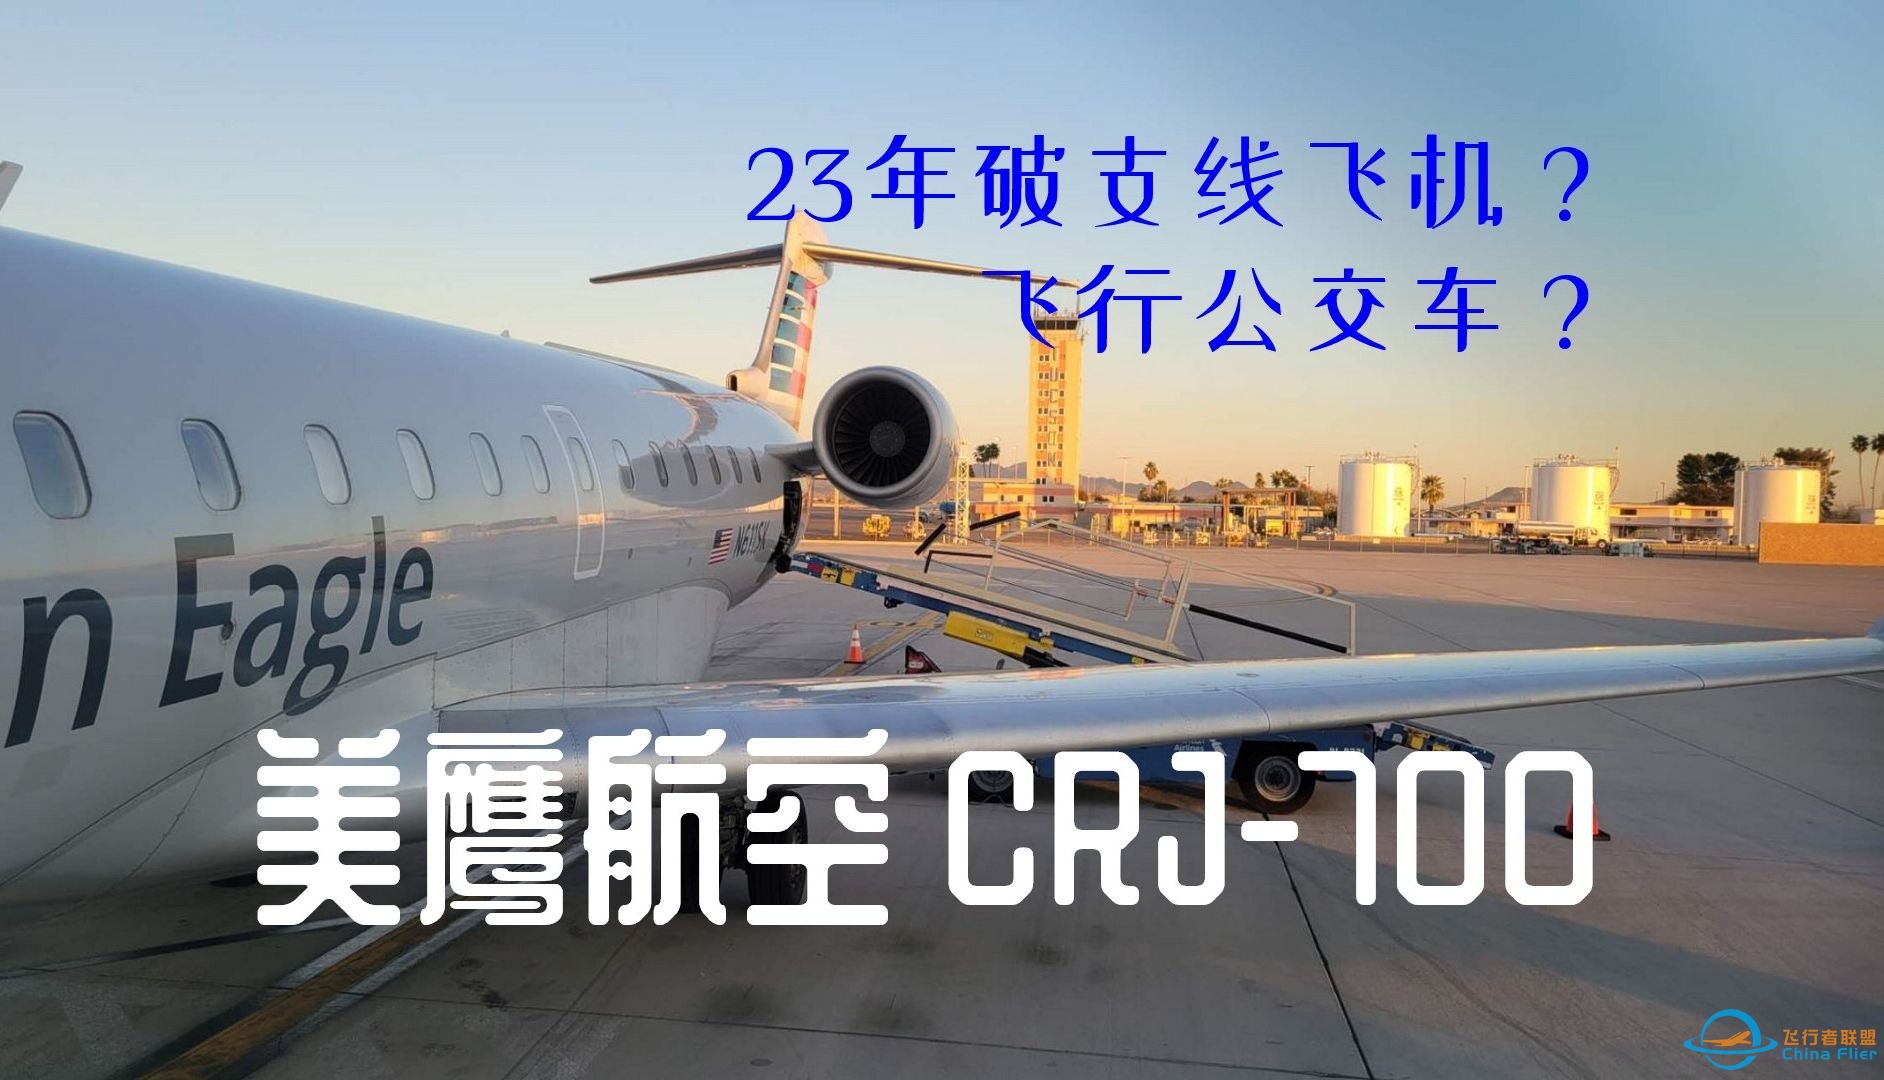 【飞行游记】长途大巴飞上天？美鹰航空CRJ-700区域航线飞行体验-7598 